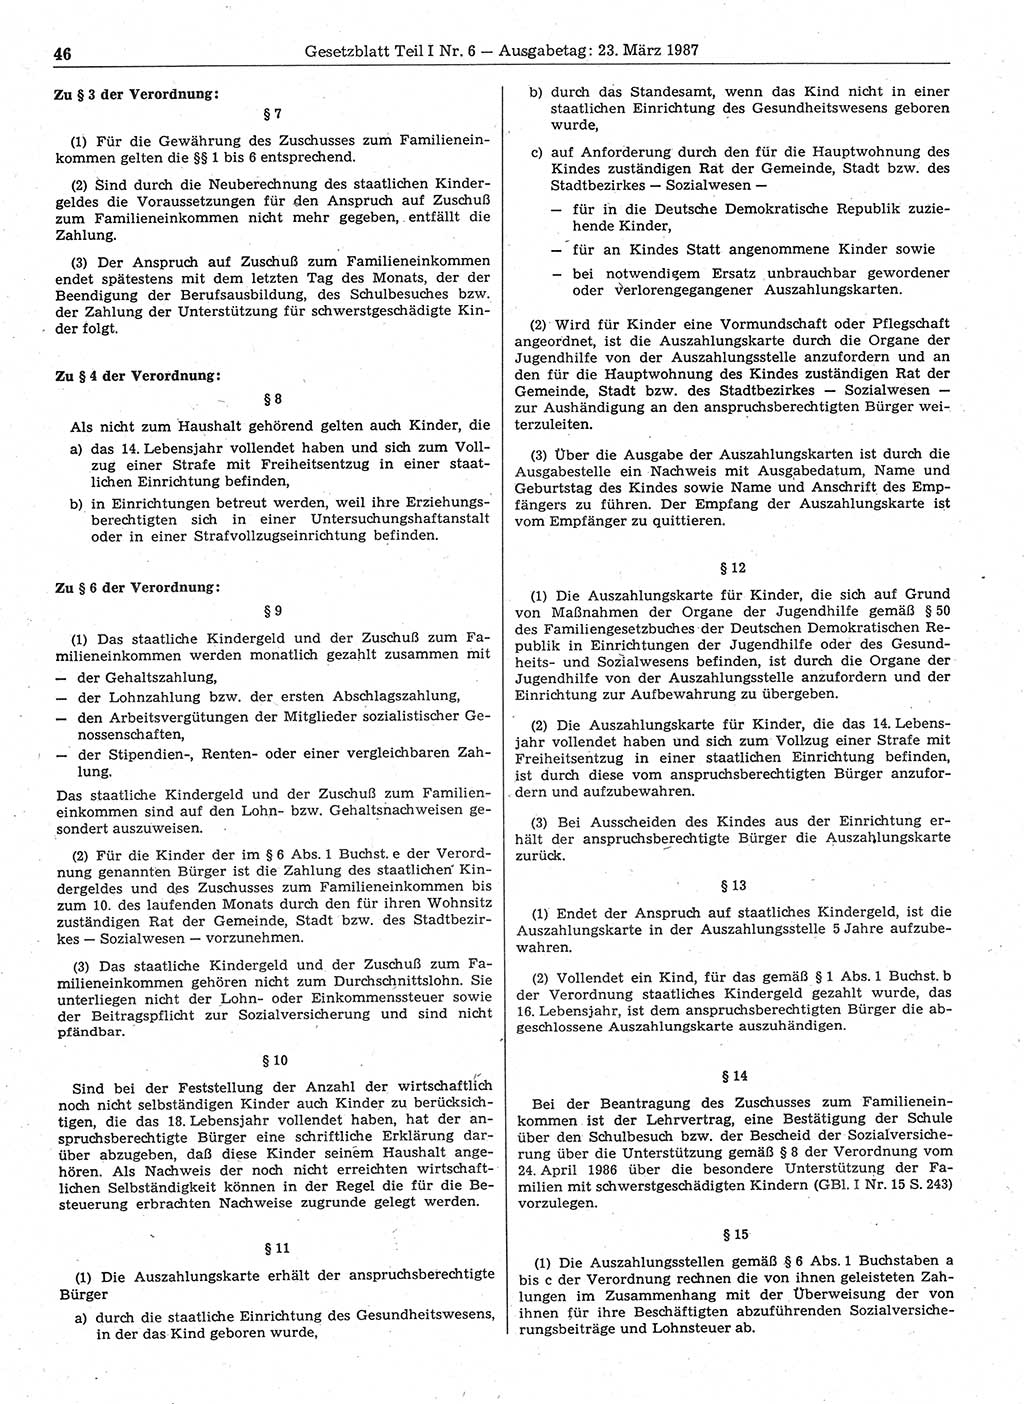 Gesetzblatt (GBl.) der Deutschen Demokratischen Republik (DDR) Teil Ⅰ 1987, Seite 46 (GBl. DDR Ⅰ 1987, S. 46)